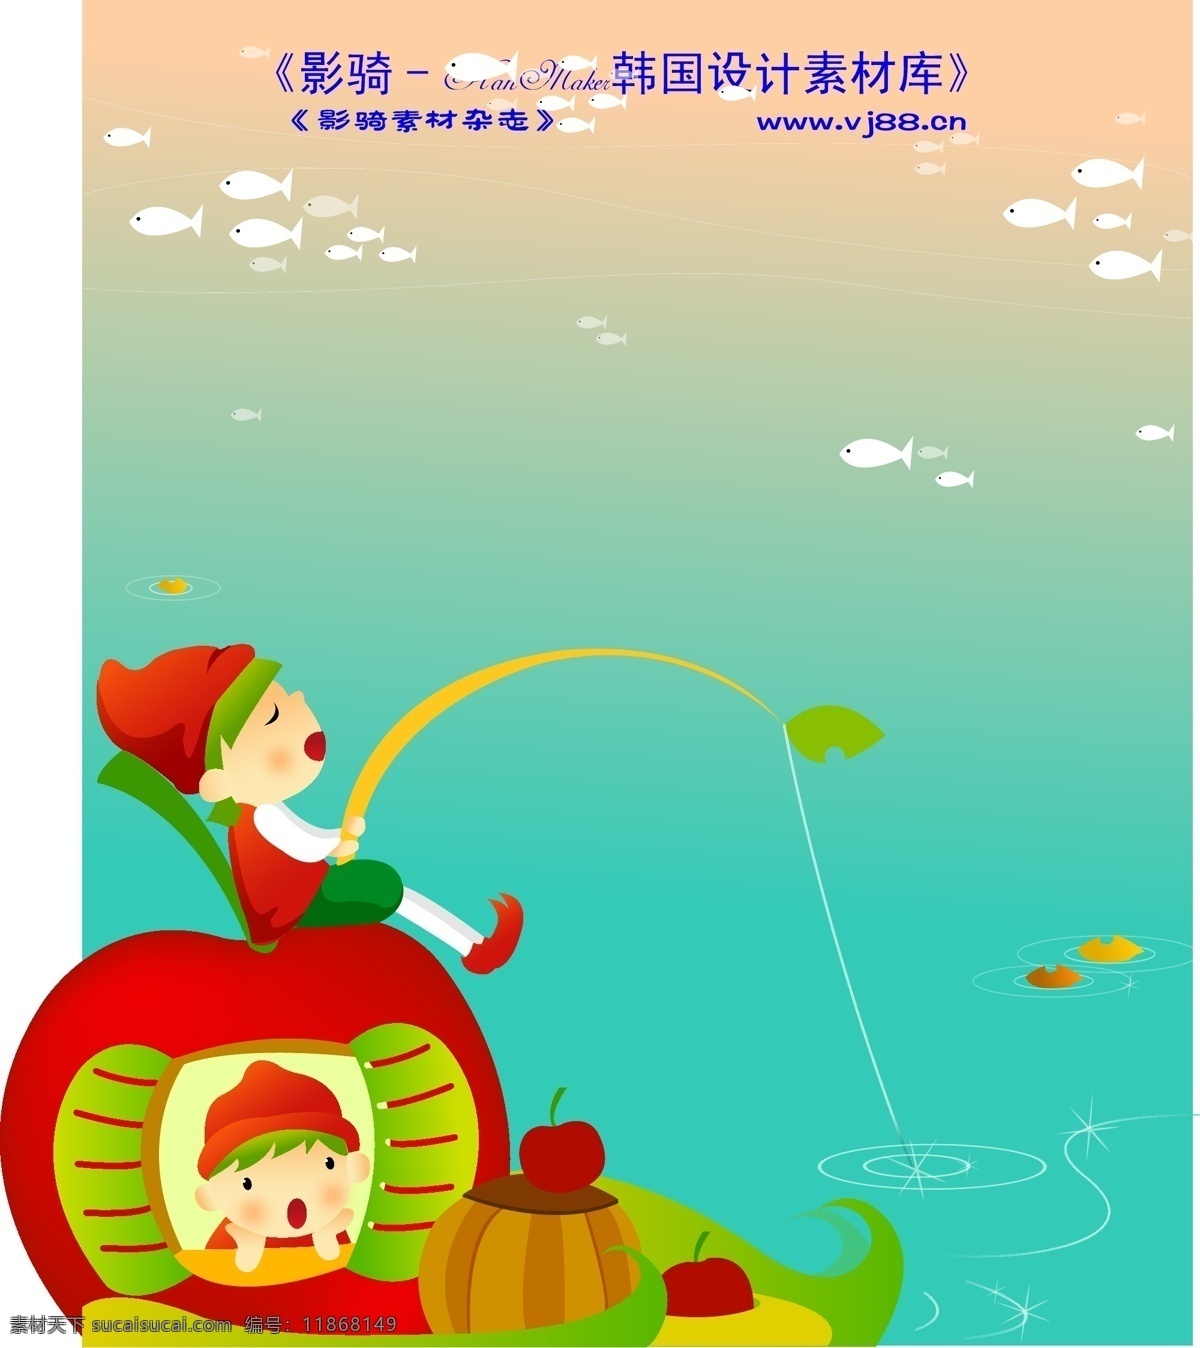 田园 玩耍 hanmaker 韩国 设计素材 库 矢量 田园玩耍 游玩游戏 乡村卡通 其他矢量图